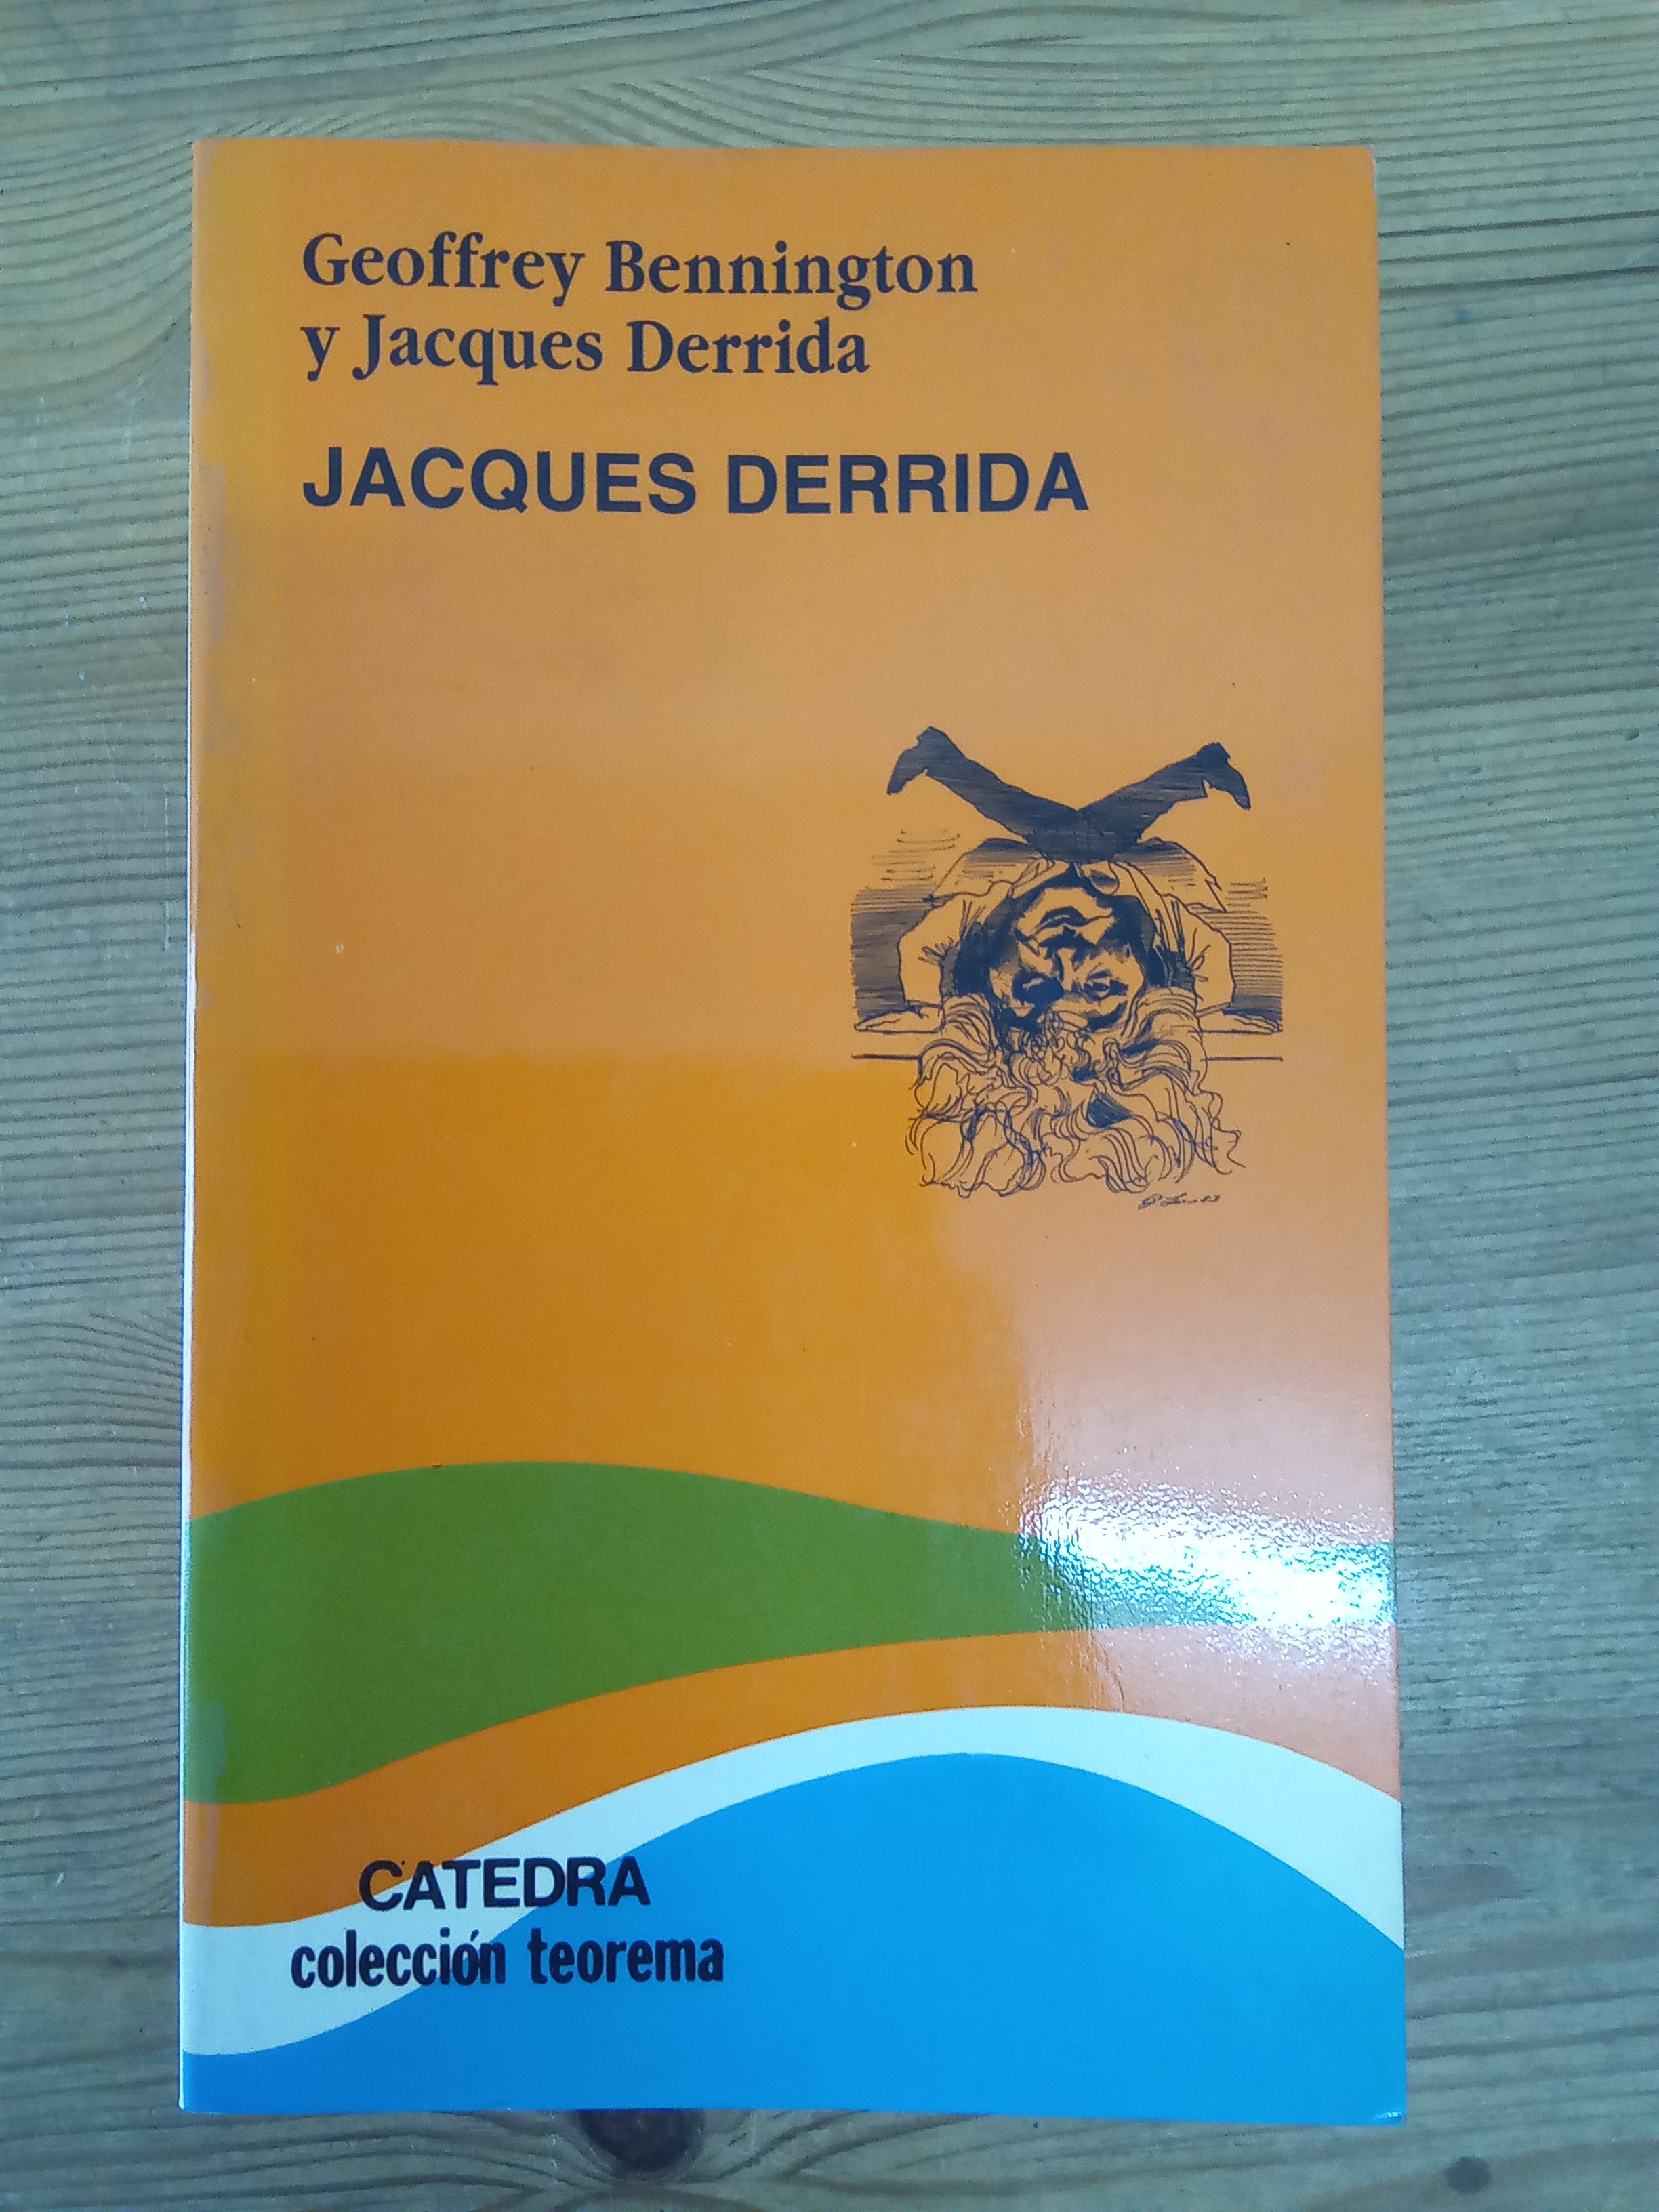 Jacques Derrida - Geoffrey Bennington y Jacques Derrida